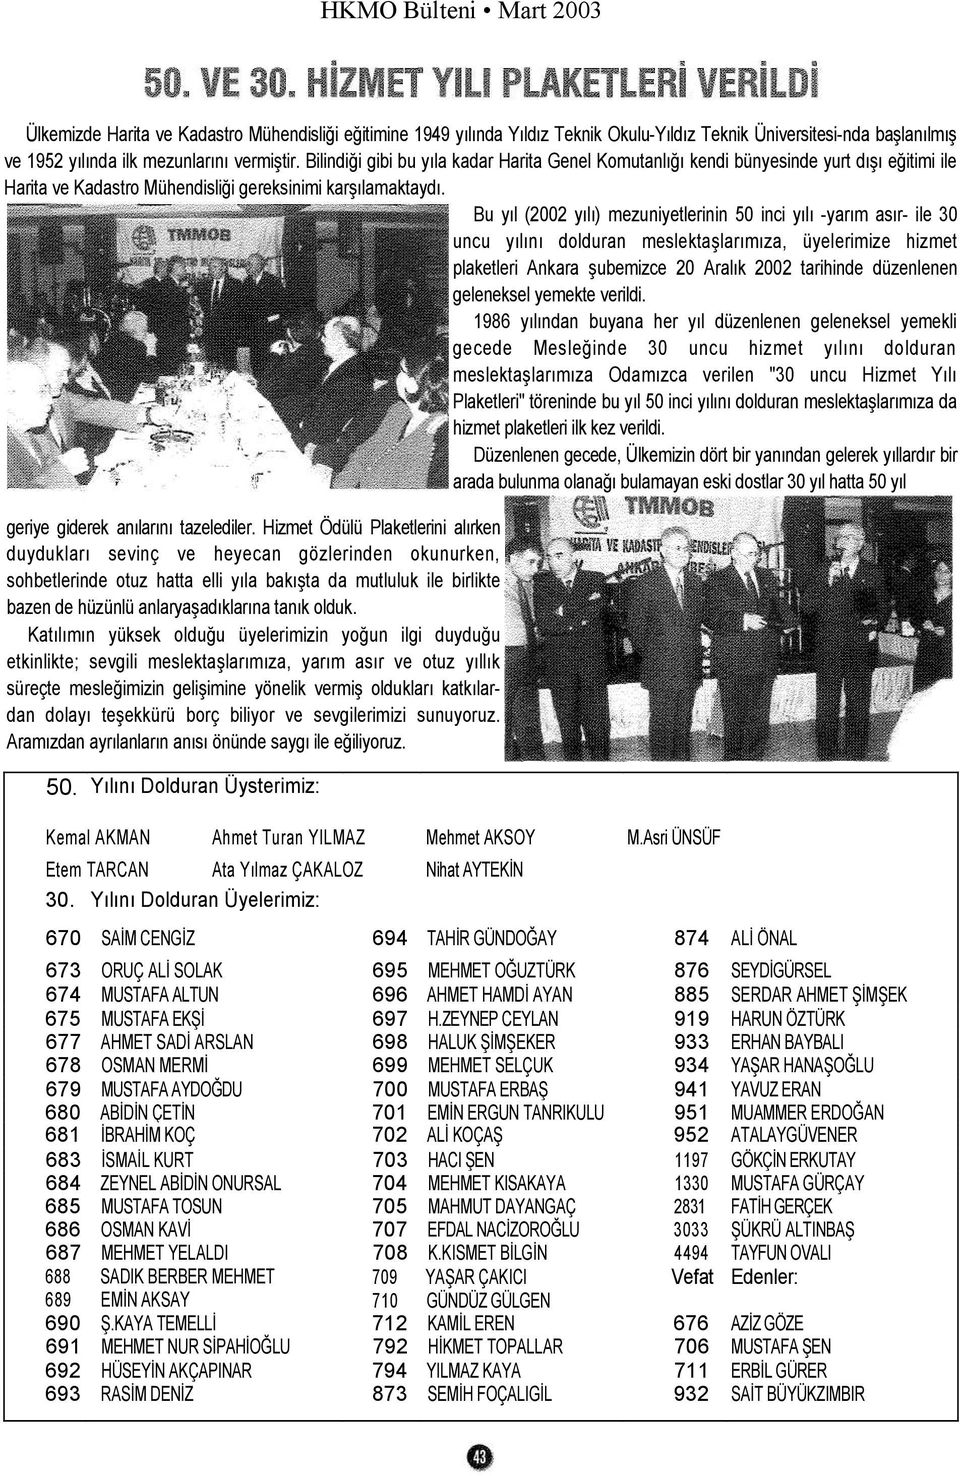 Bu yıl (2002 yılı) mezuniyetlerinin 50 inci yılı -yarım asır- ile 30 uncu yılını dolduran meslektaşlarımıza, üyelerimize hizmet plaketleri Ankara şubemizce 20 Aralık 2002 tarihinde düzenlenen